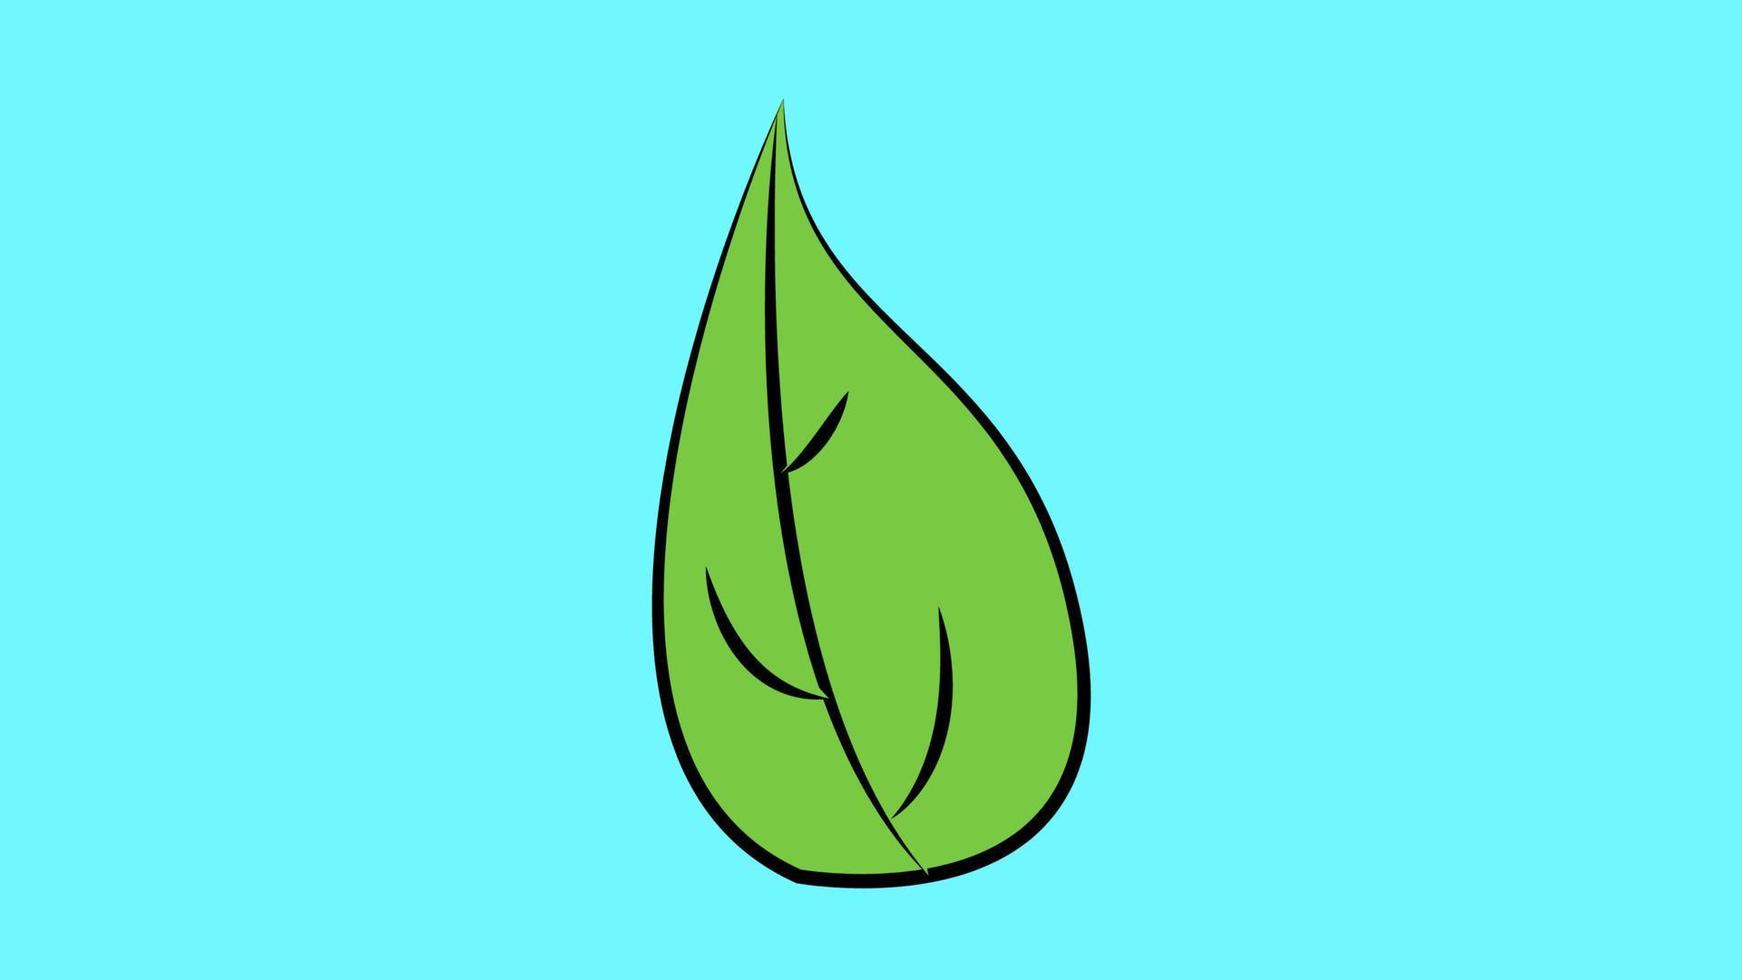 grön blad växter ikon eller logotyp. ekologi renhet och natur vektor